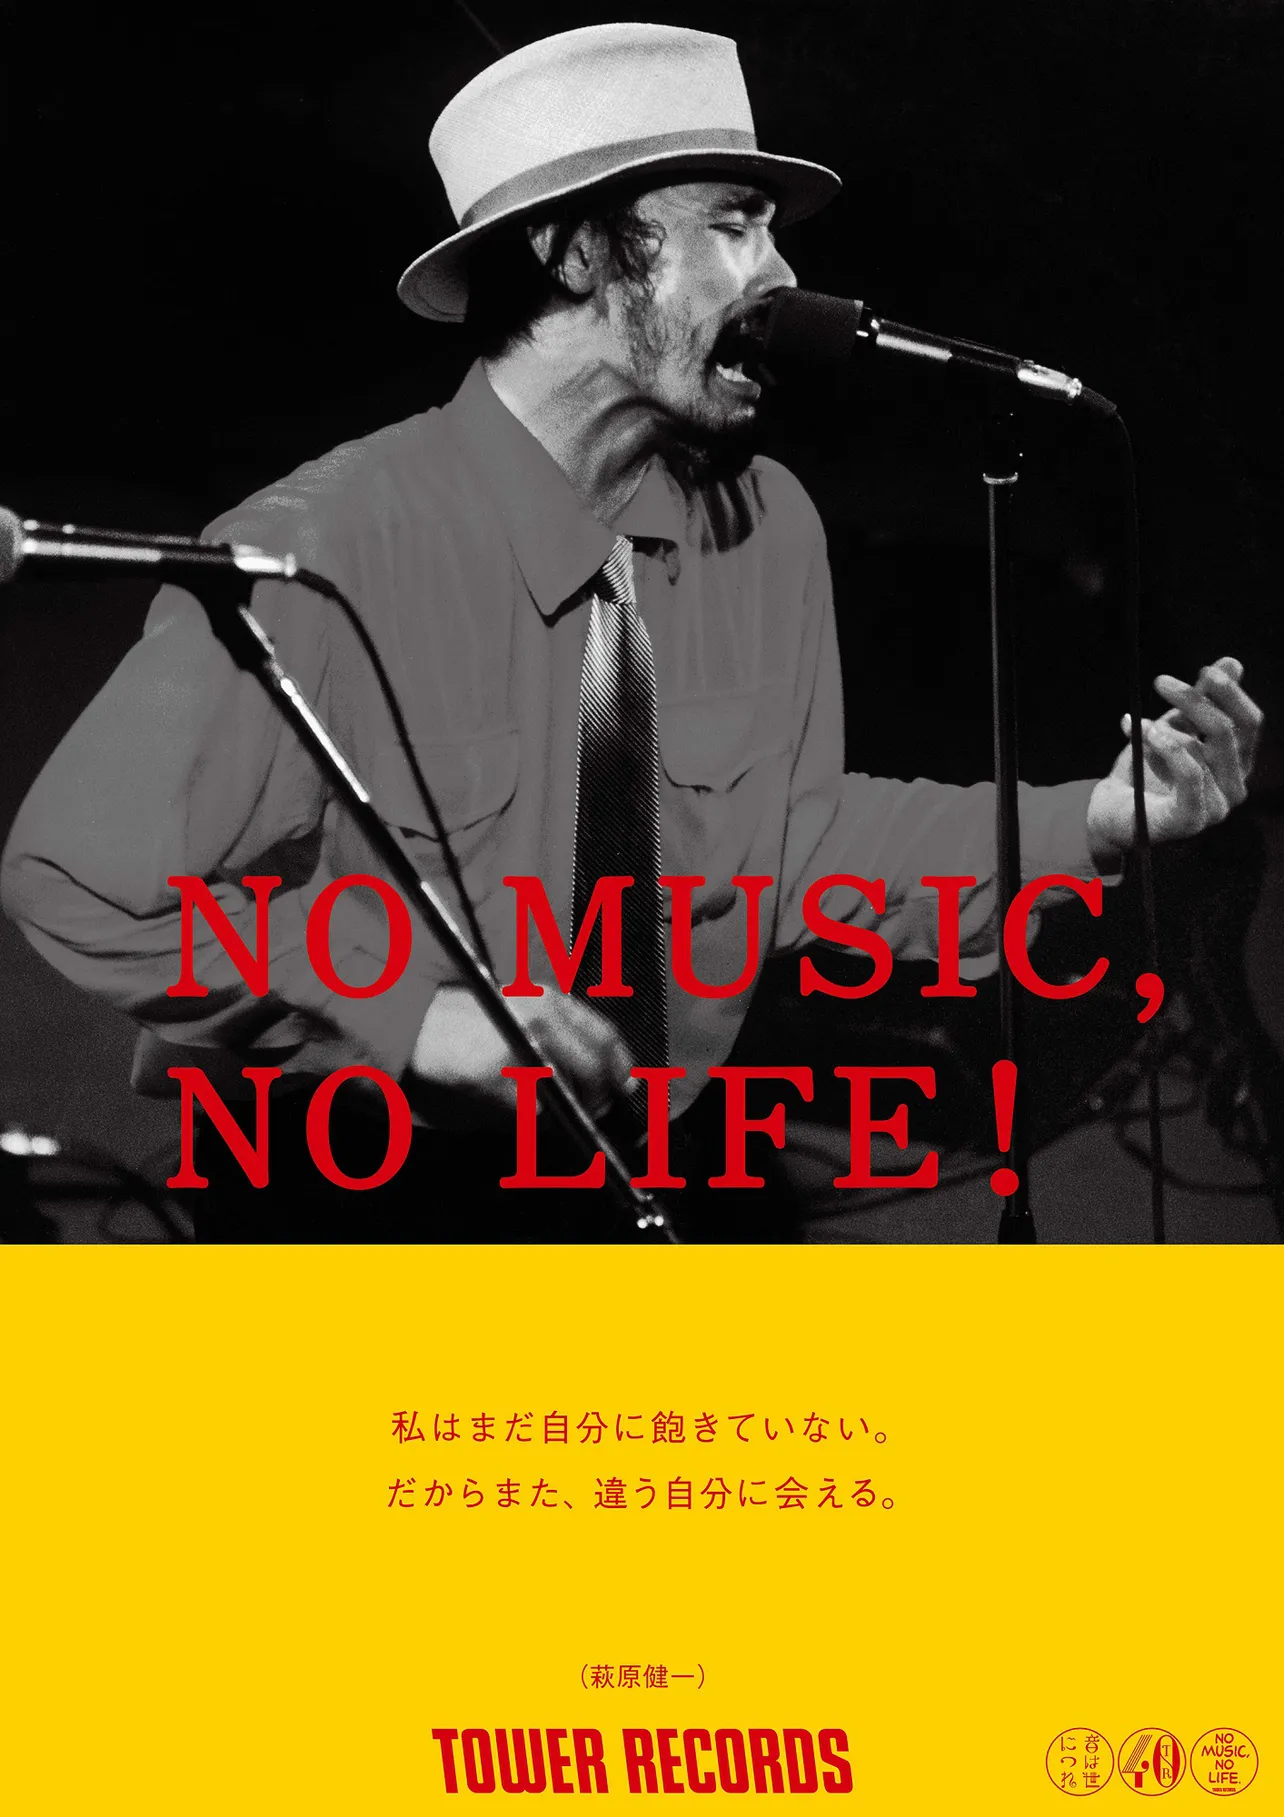 先日亡くなった“ショーケン”こと萩原健一も、ミュージシャンとして「NO MUSIC, NO LIFE.」ポスターに登場